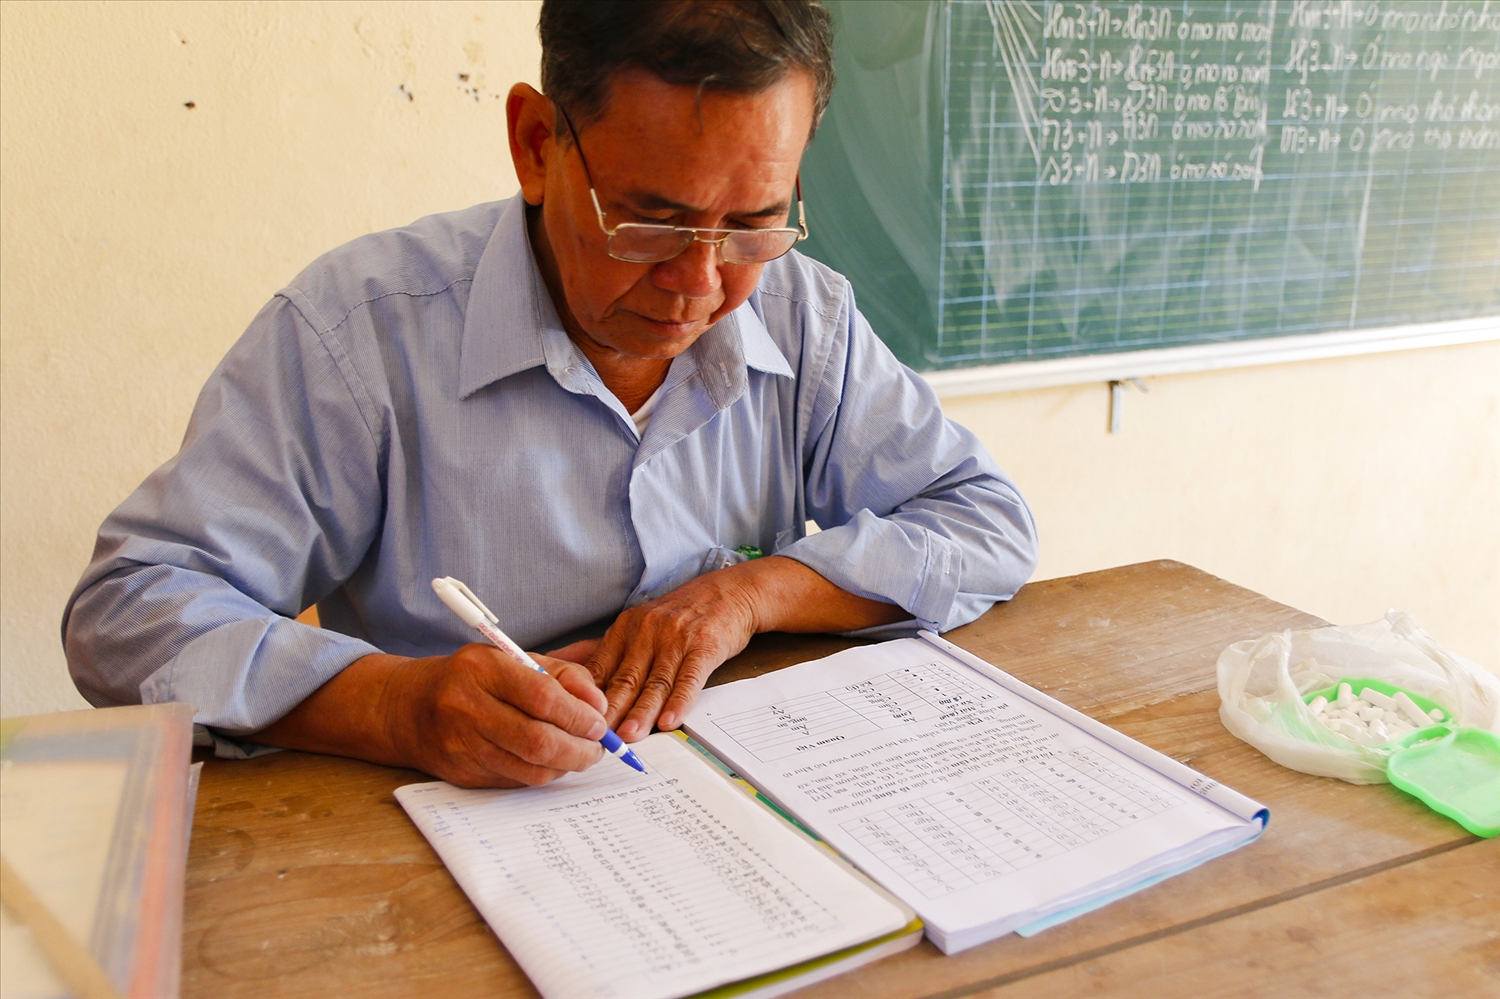 Thầy giáo Vi Khăn Mun đã kỳ công soạn ra những bài giảng sinh động để giúp học viên dễ nhớ 